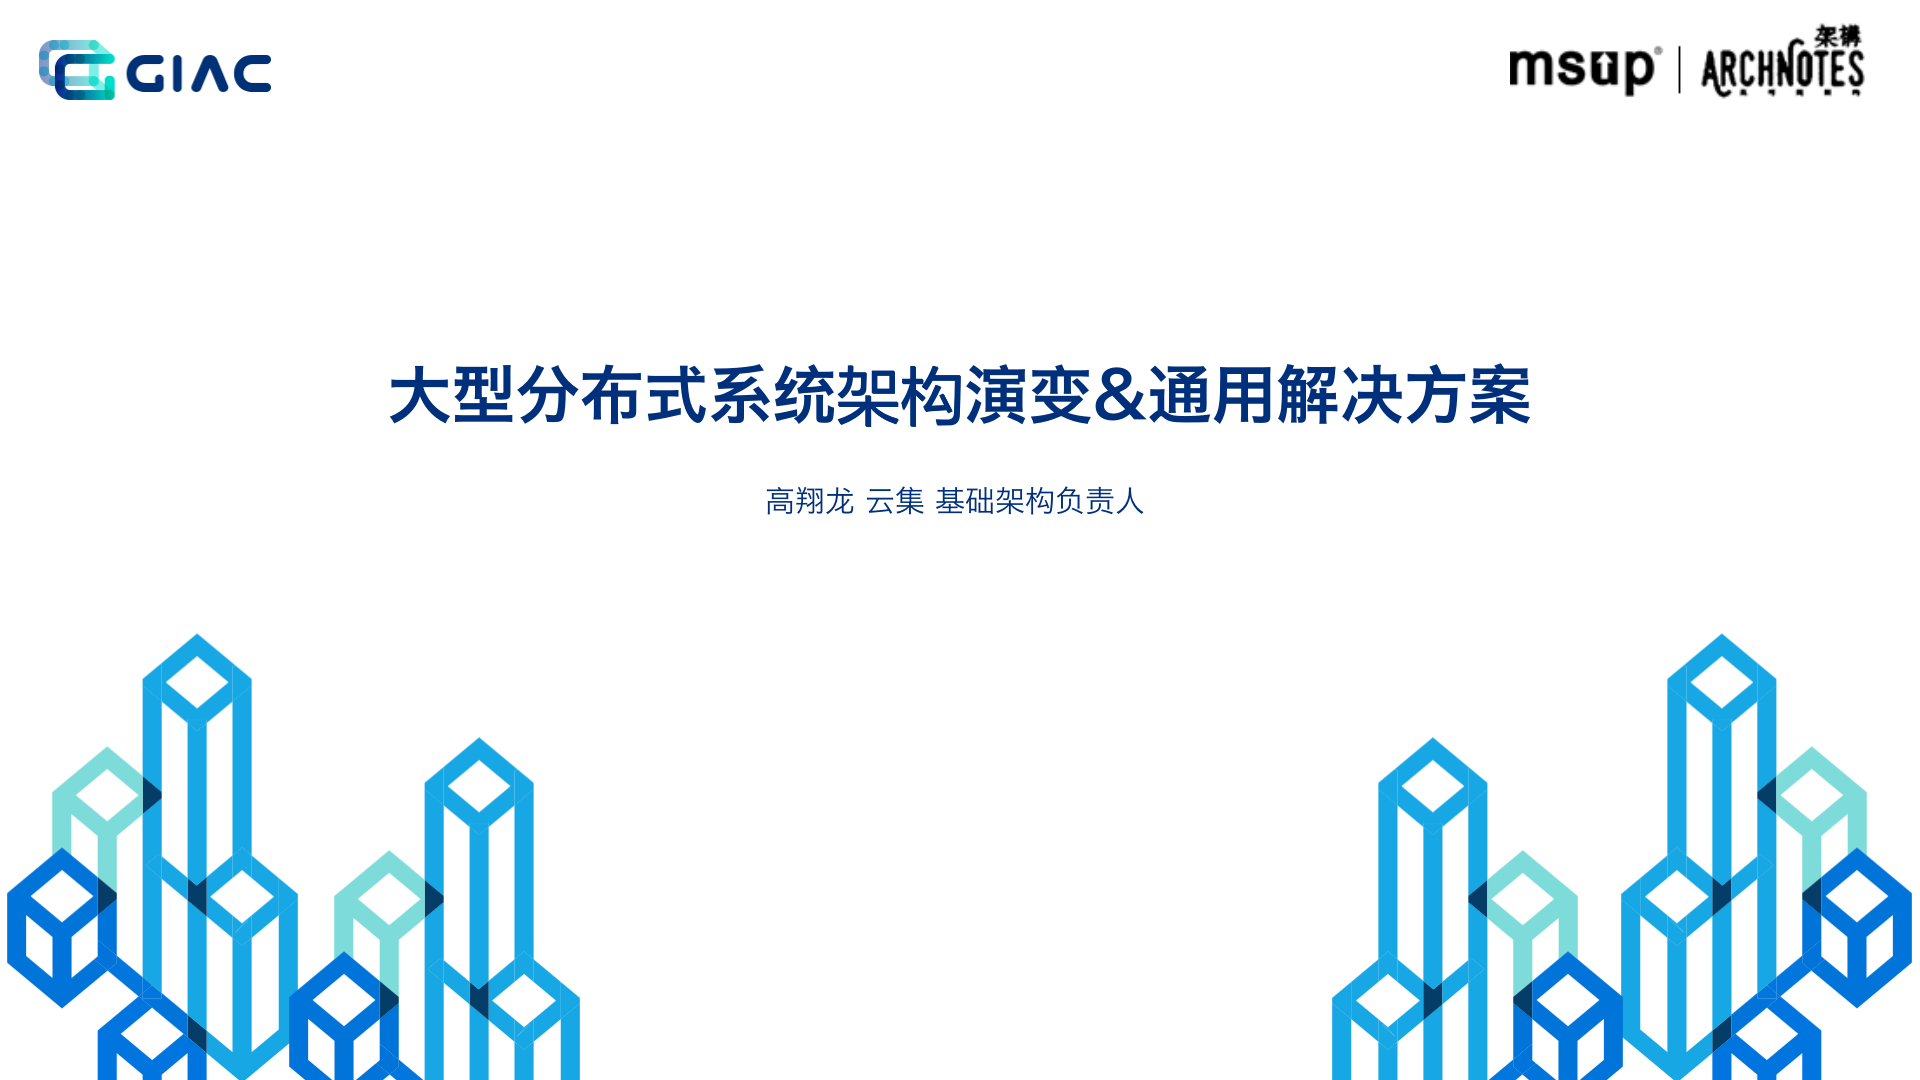 2020深圳站-GIAC全球互联网架构大会PPT分享